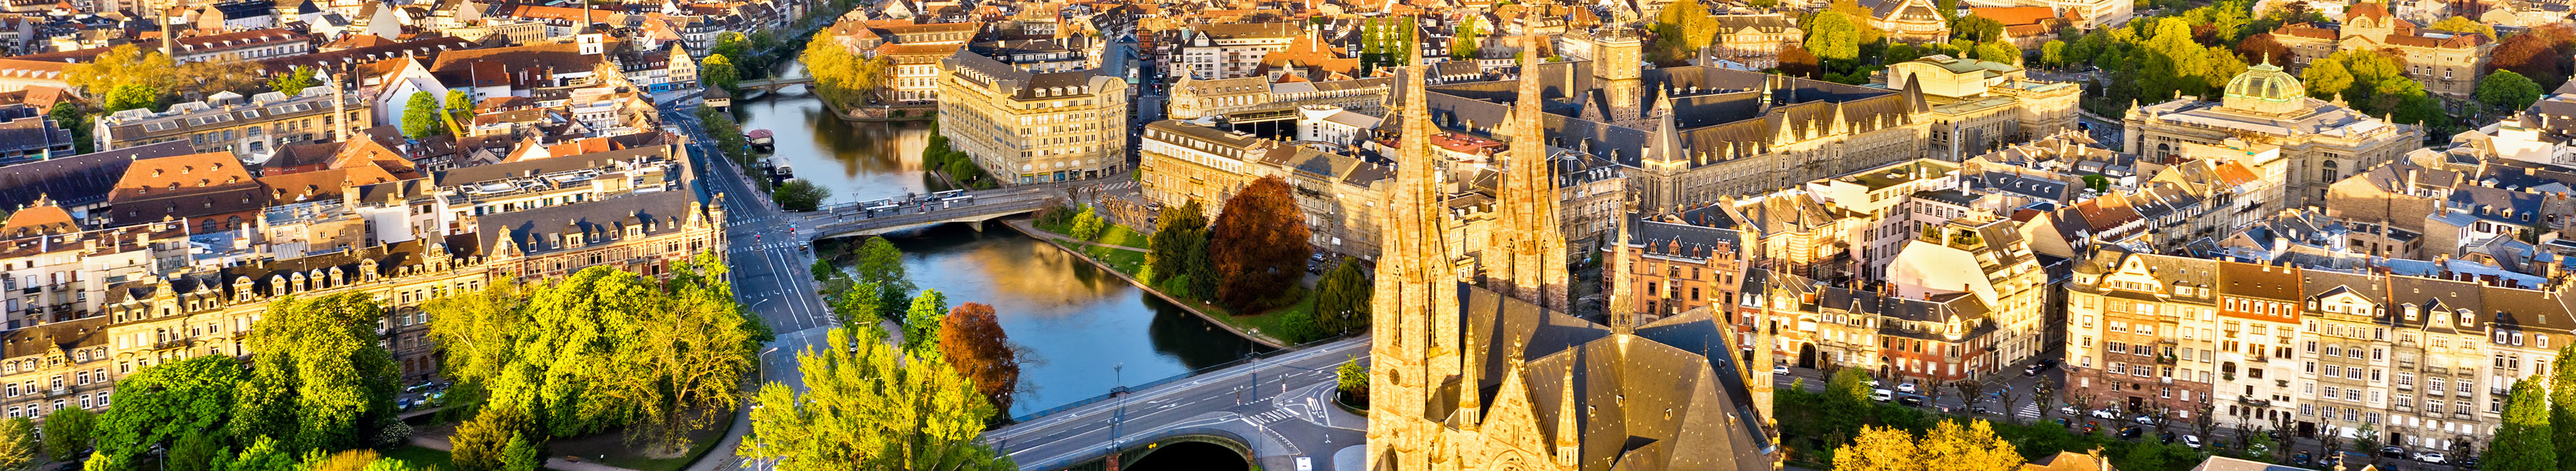 Blick auf die Kathedrale von Strasbourg